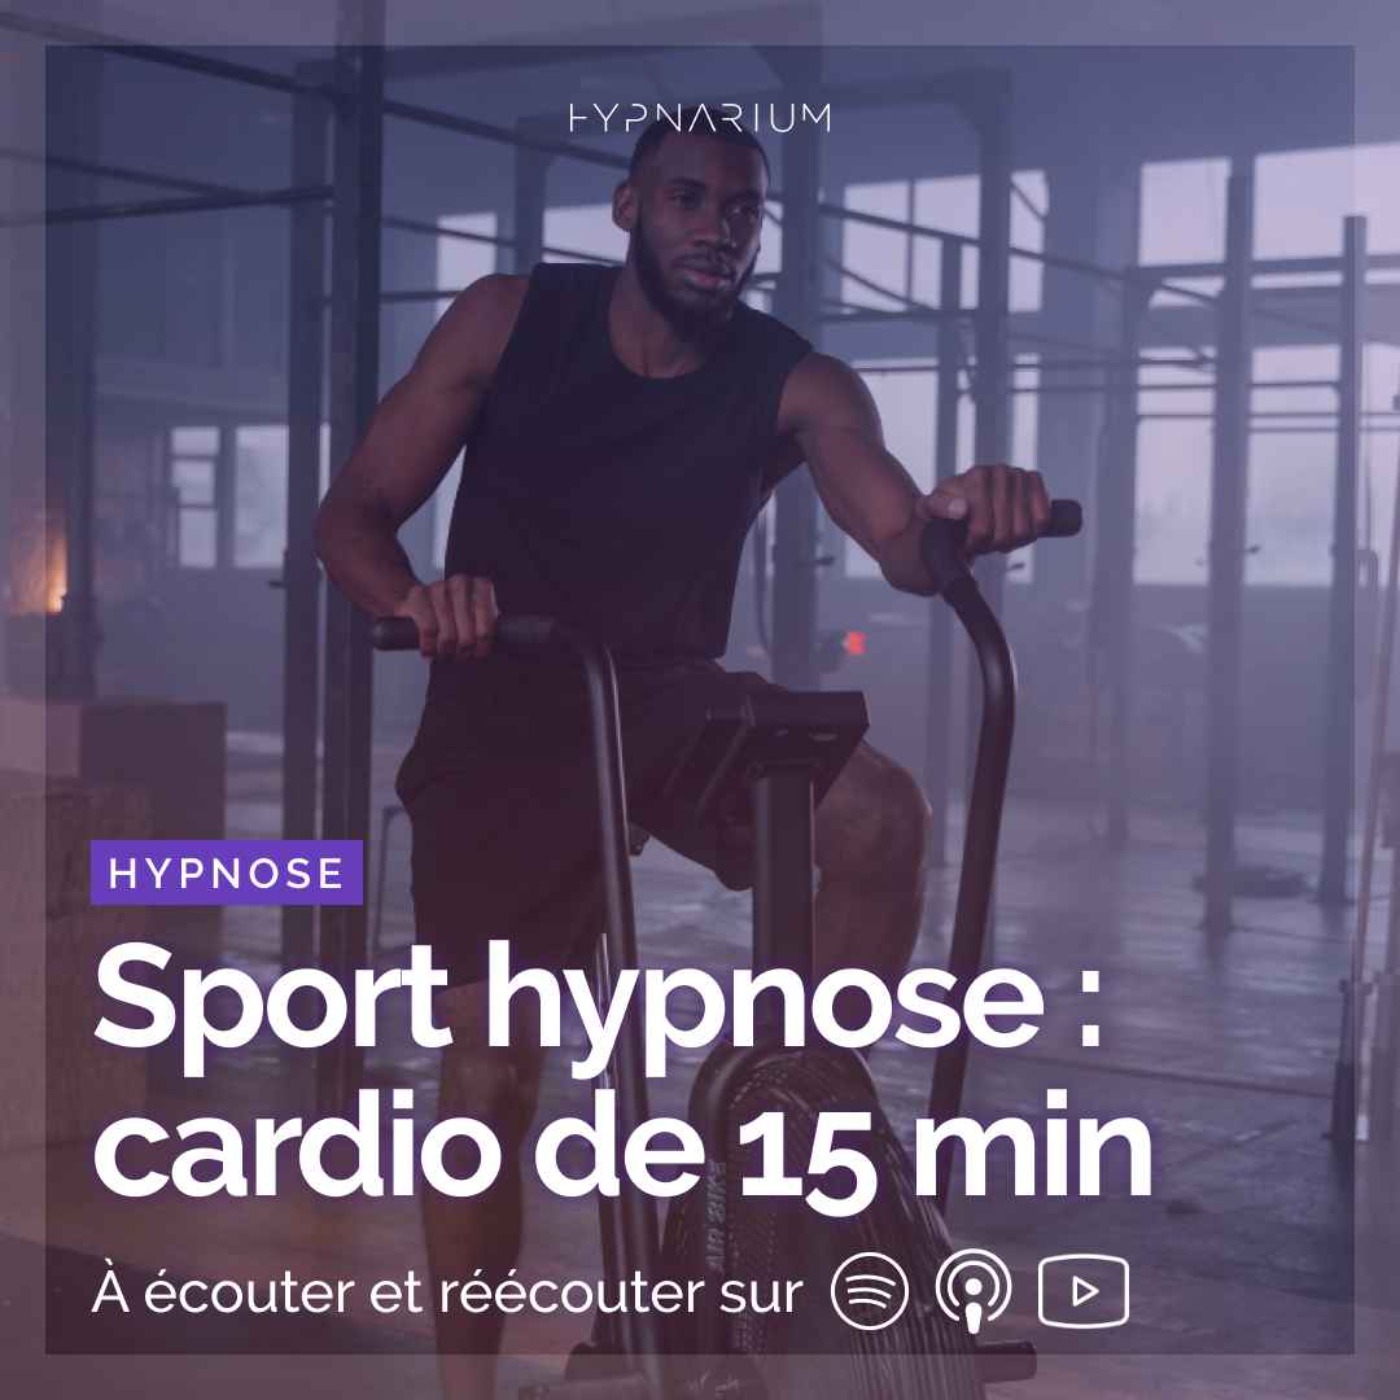 Sport hypnose : séance cardio de 15 min sous hypnose (tapis, vélo elliptique, rameur,...)